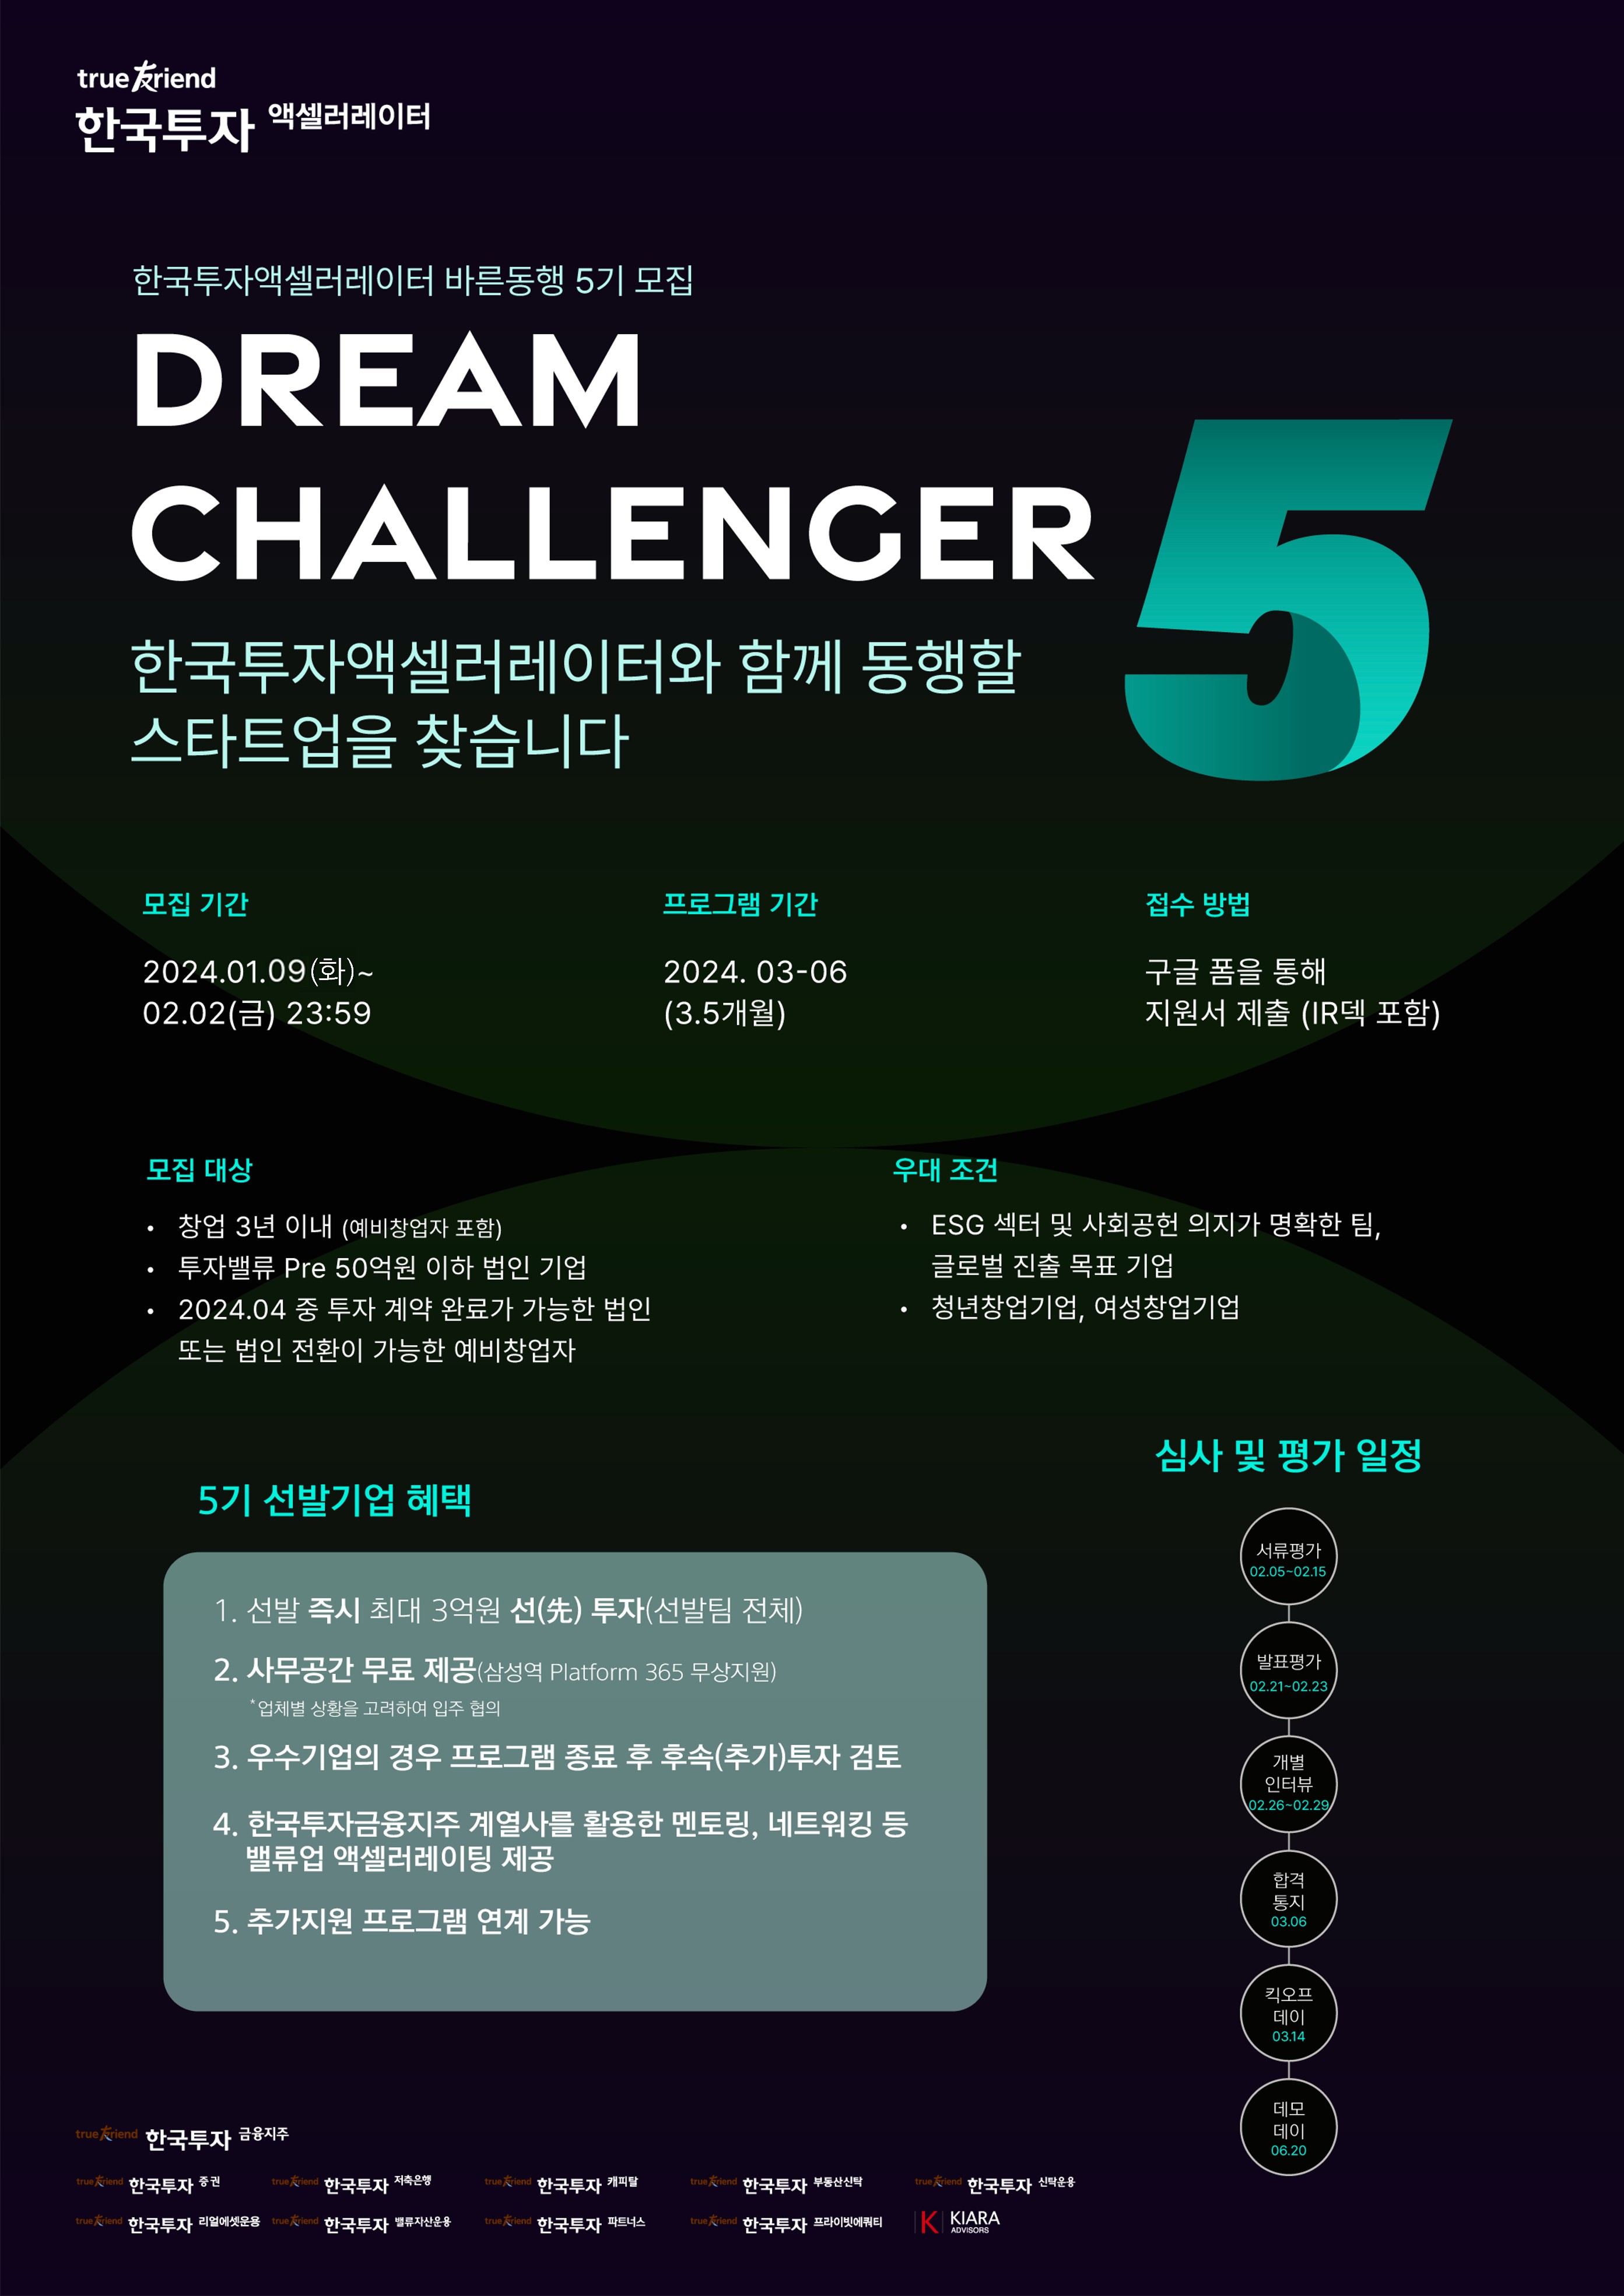 (Ã¢¾÷³Ý) [ÇÑ±¹ÅõÀÚAC] Dream Challenger 5±â ¸ðÁýÆ÷½ºÅÍ.jpg